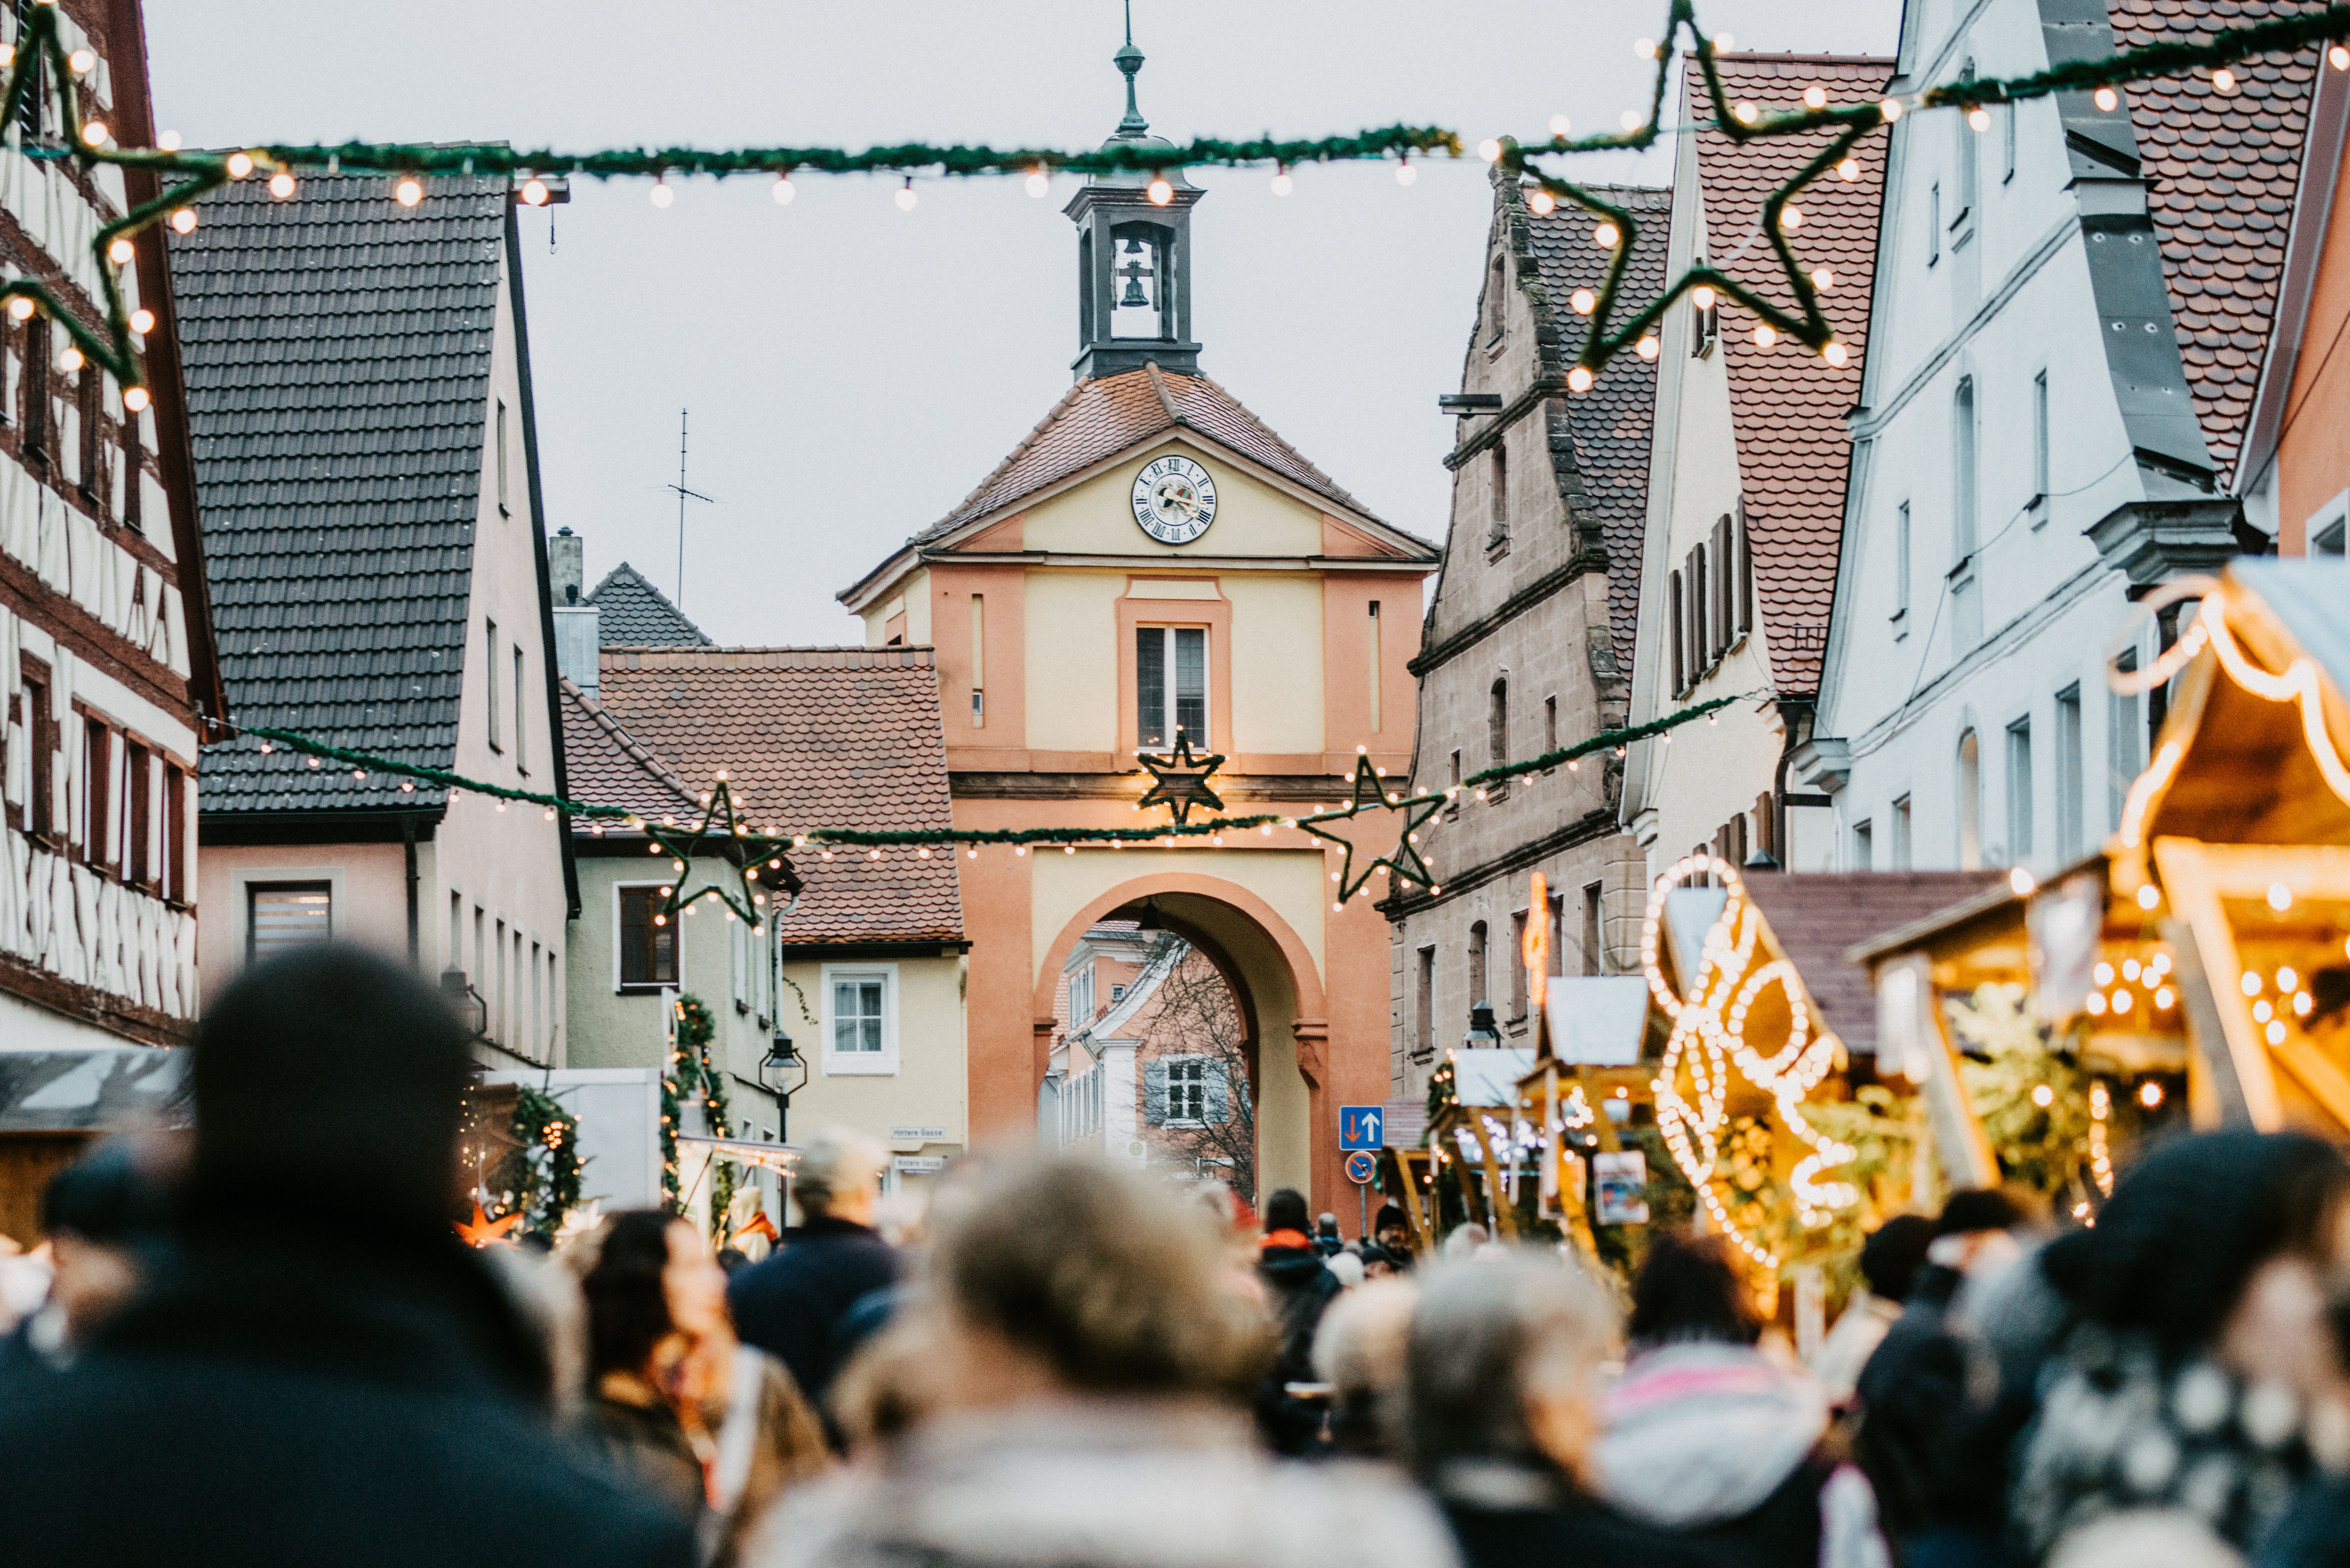  Windsbacher Weihnachtsmarkt 